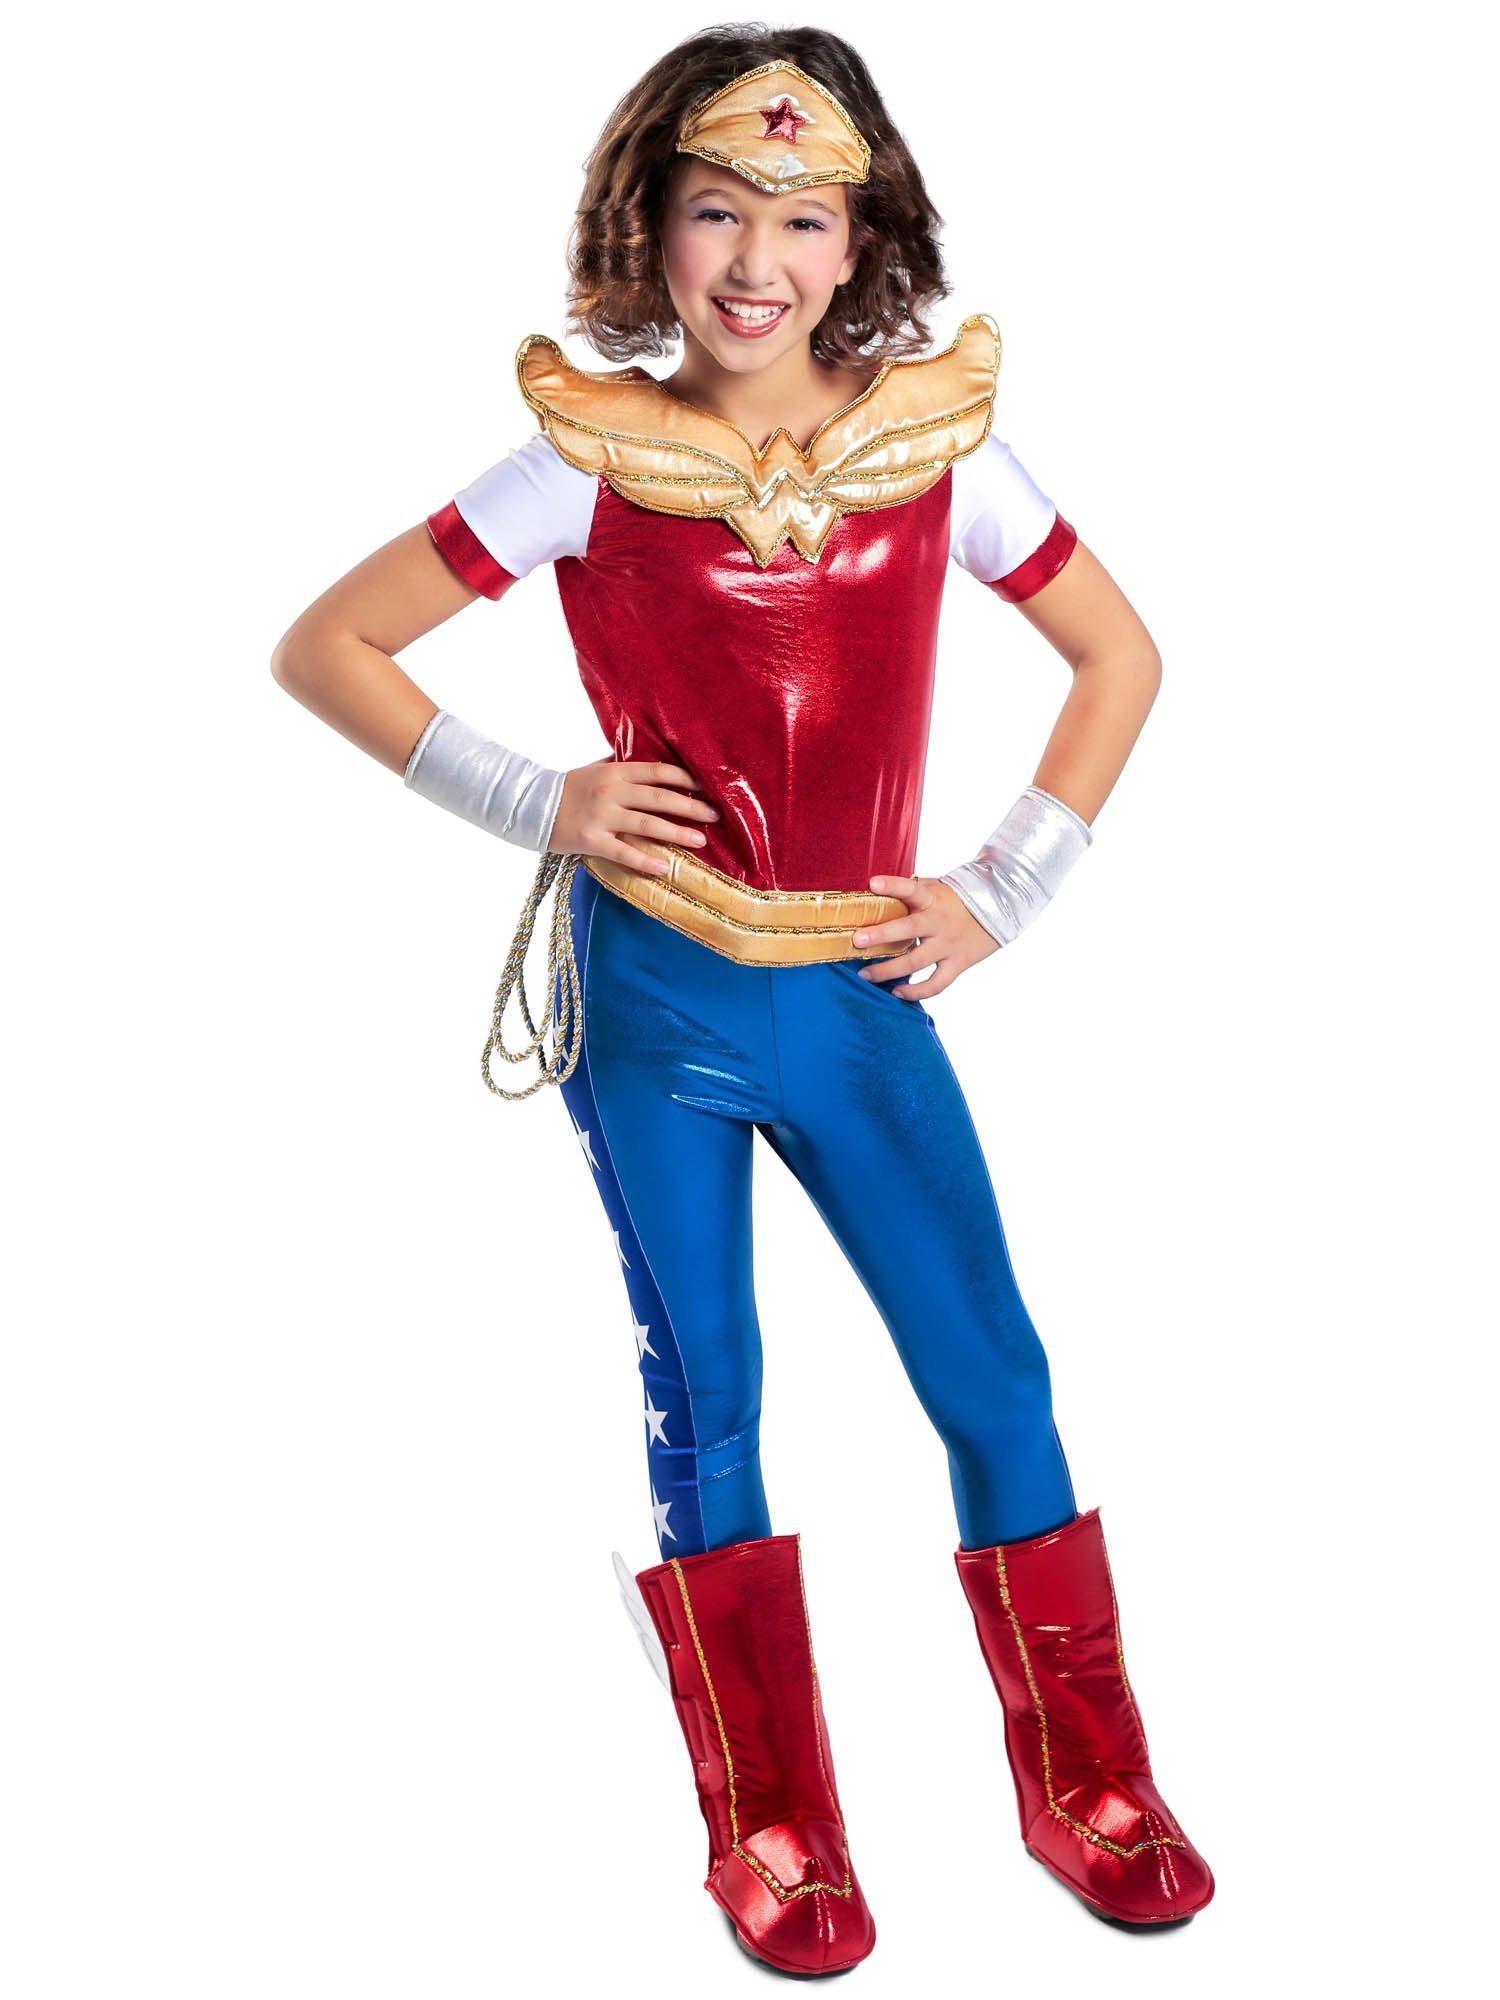 Girls' DC Superhero Girls Wonder Woman Costume - Premium - costumes.com